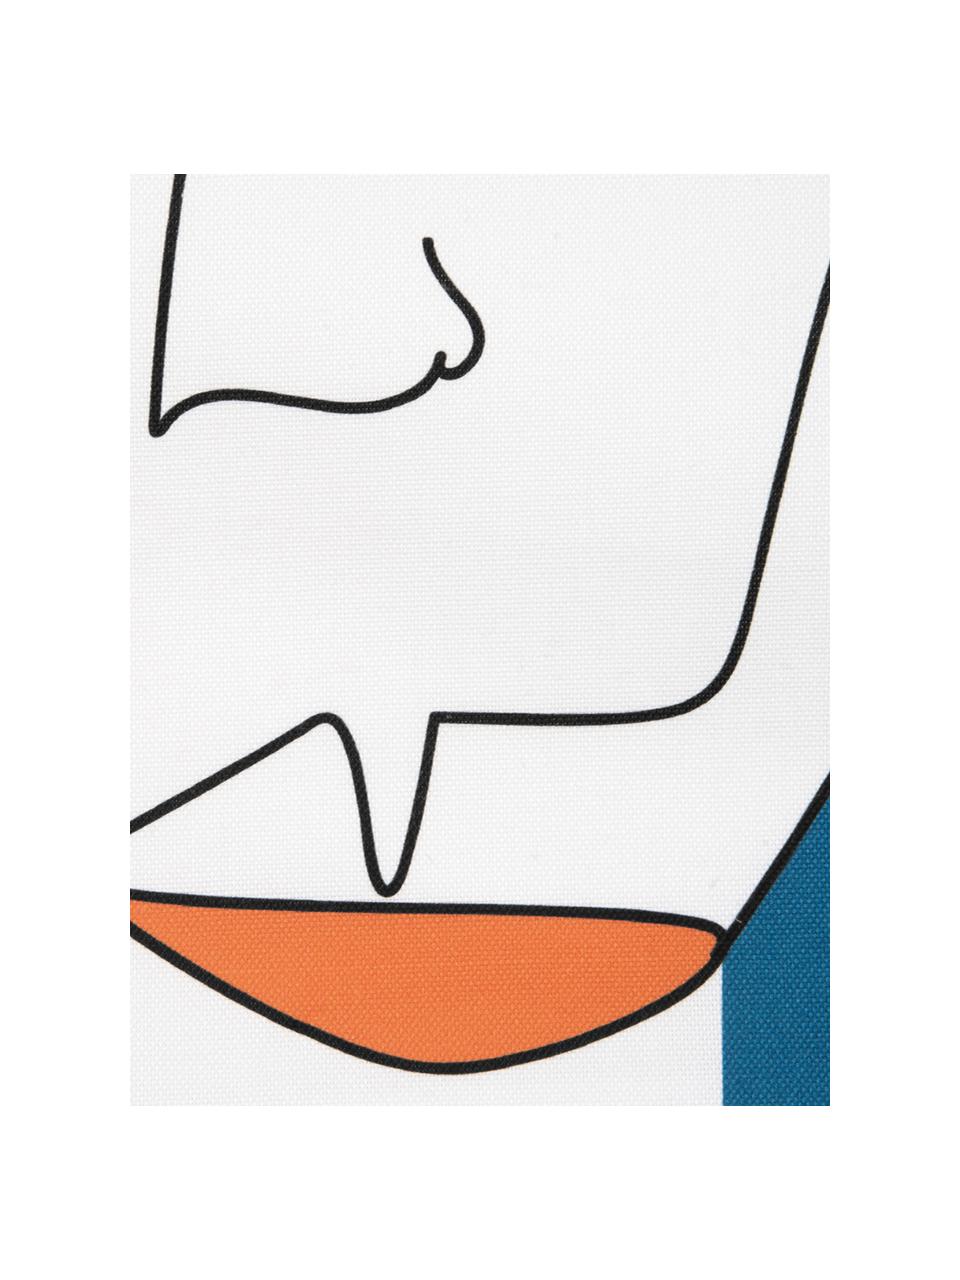 Kissenhülle Adrian mit abstraktem Print in Bunt, Webart: Panama, Weiss, Mehrfarbig, 40 x 40 cm